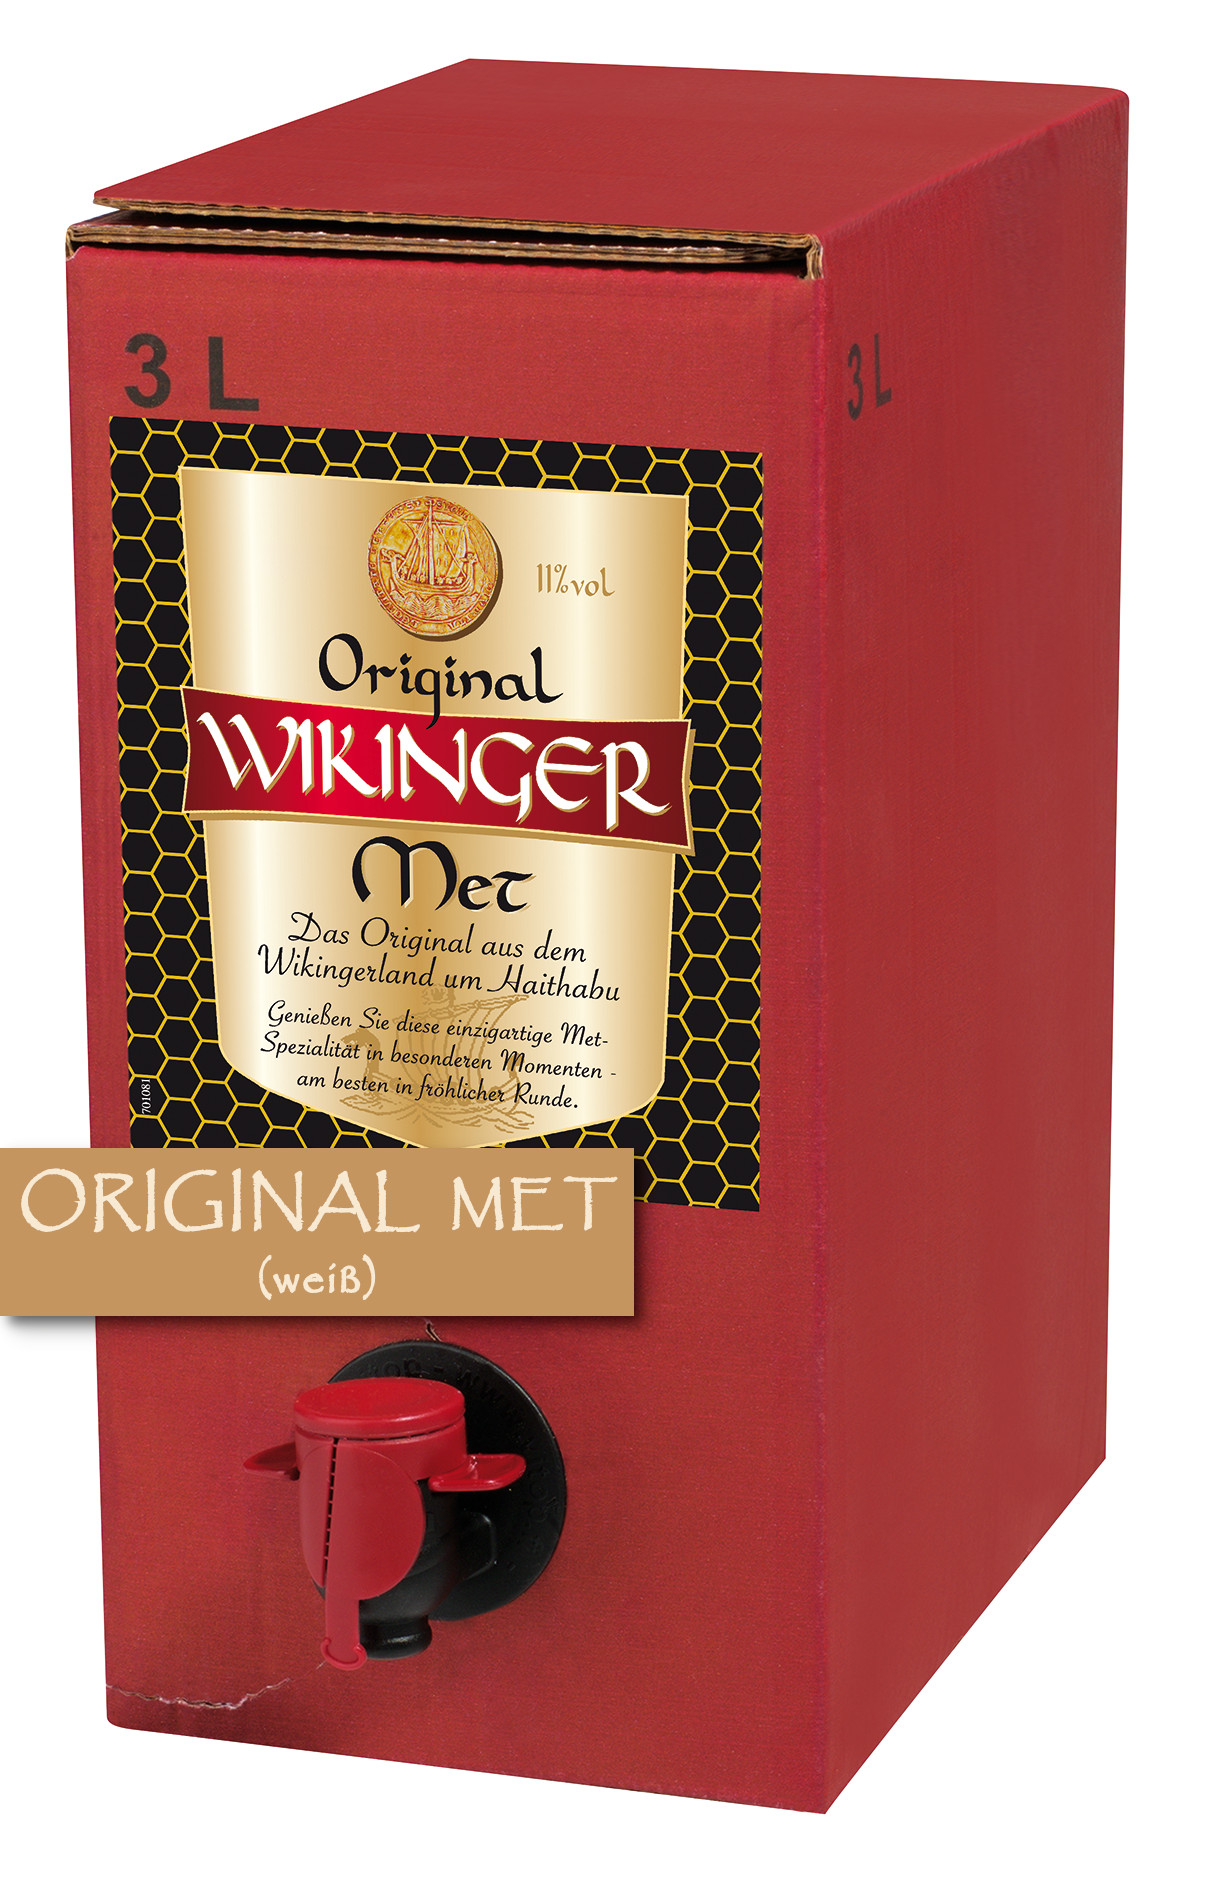 Original Wikinger Met 3 Liter Bag-Box - 3L 11% vol